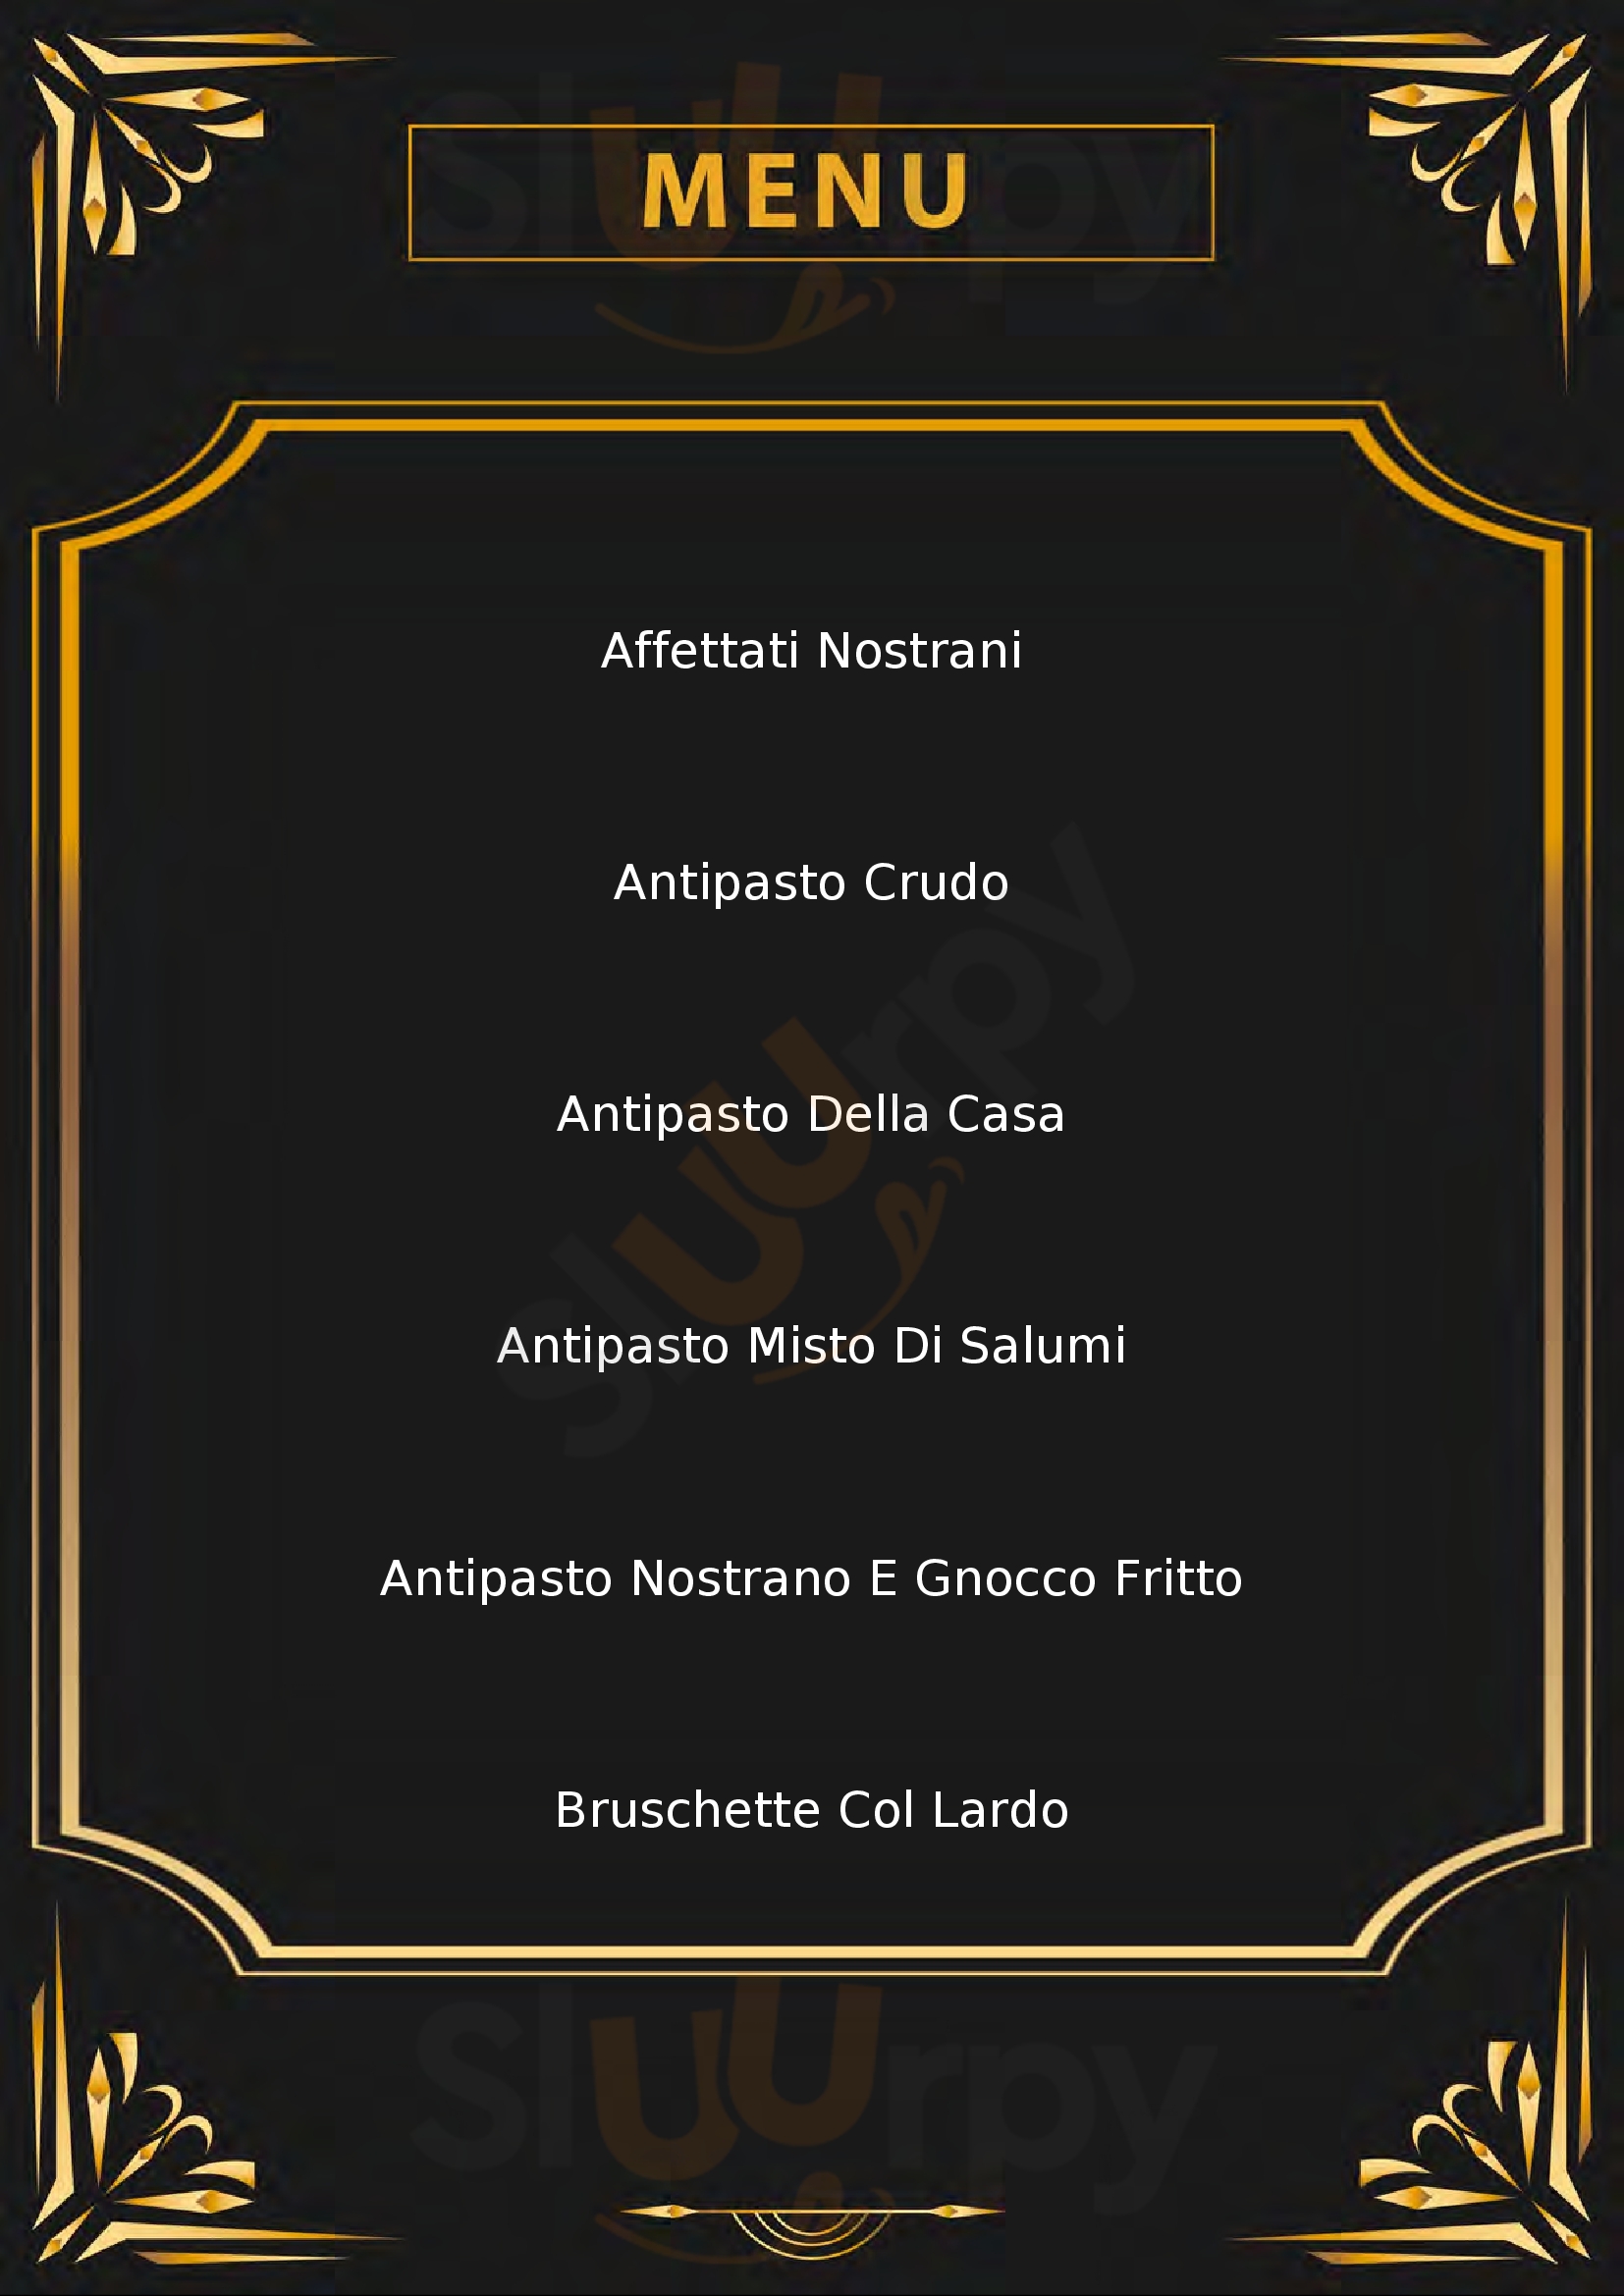 Osteria Denum Casaletto Lodigiano menù 1 pagina